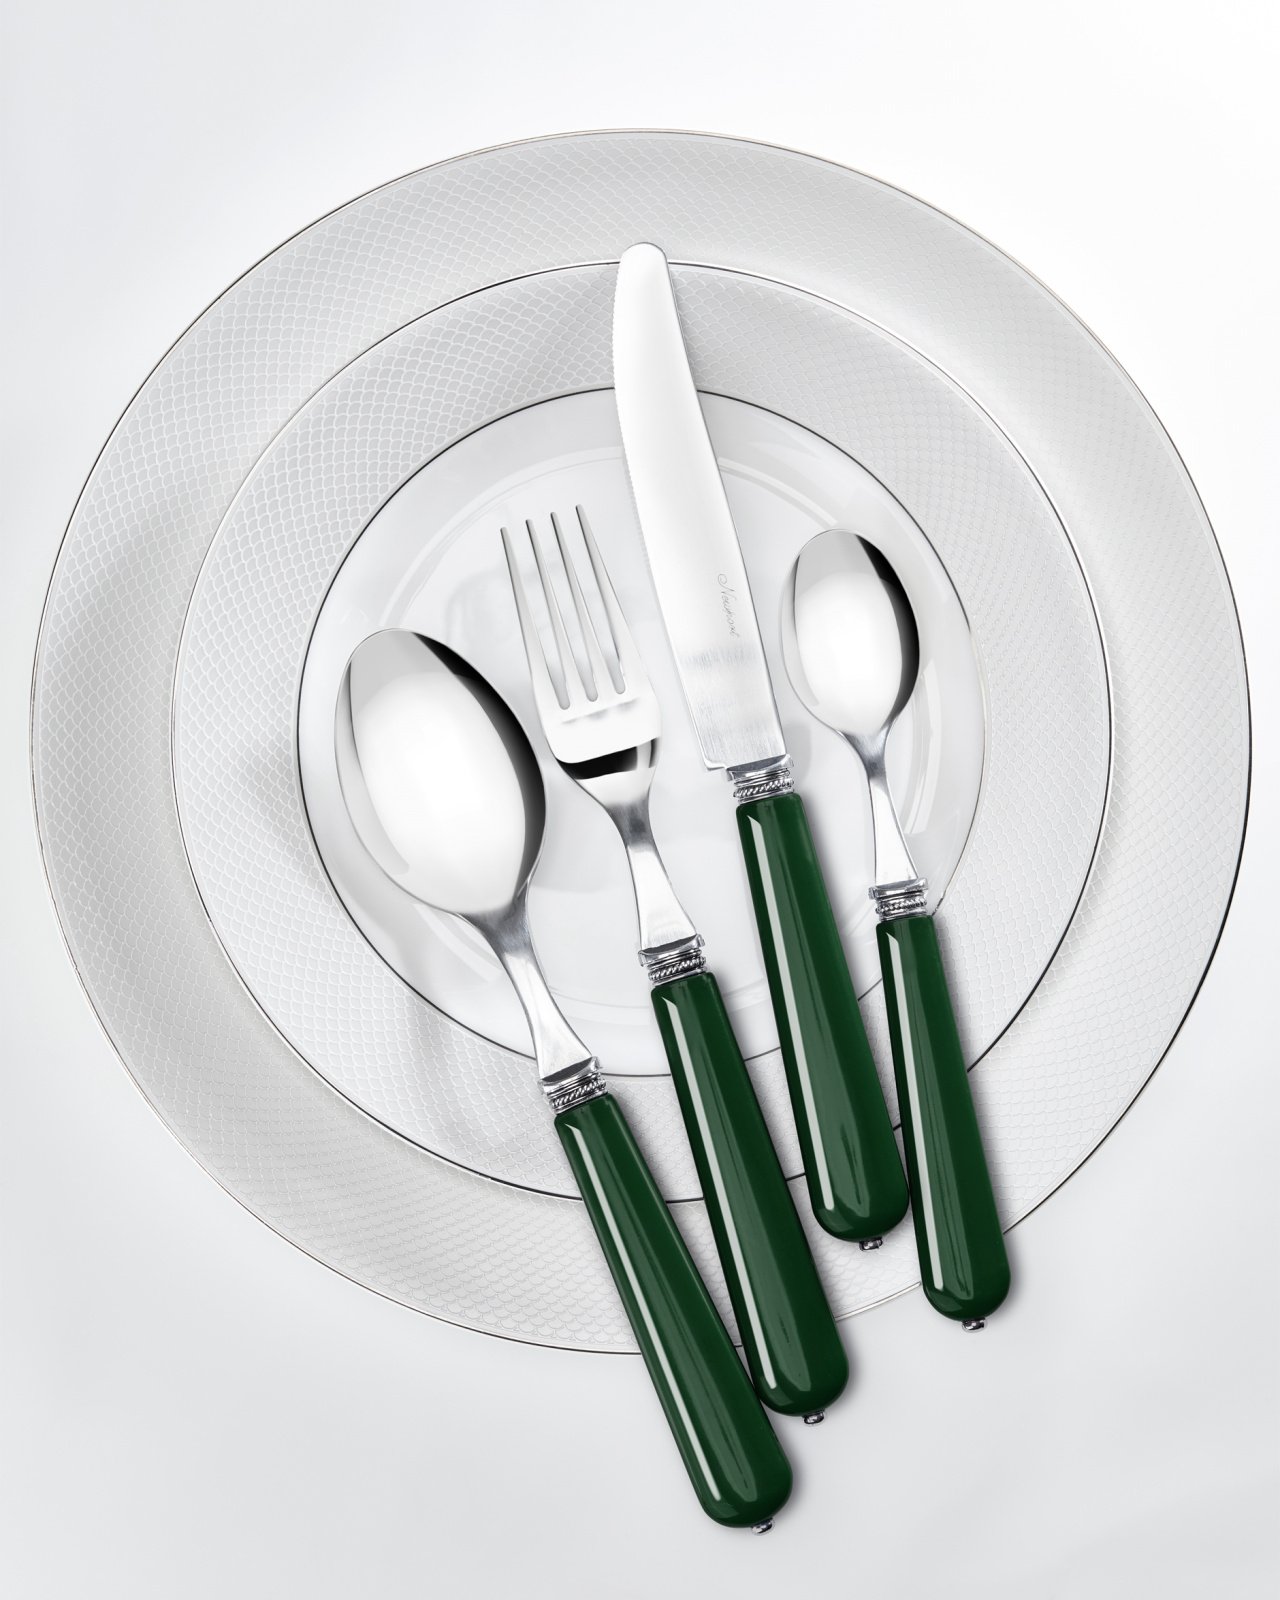 Newport Classic Green Cutlery Set 24 pcs